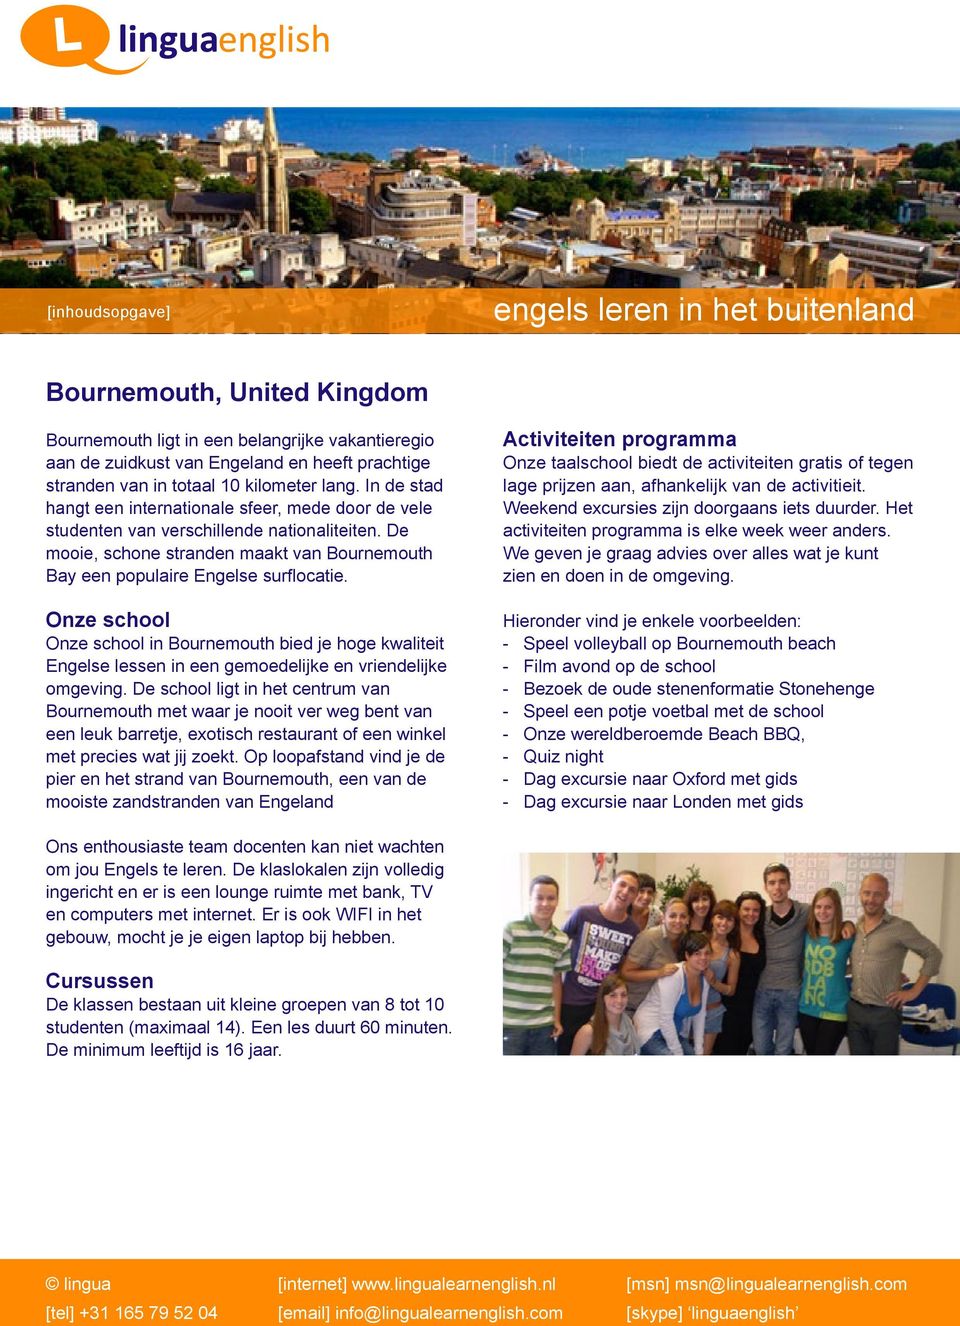 in Bournemouth bied je hoge kwaliteit Engelse lessen in een gemoedelijke en vriendelijke omgeving.